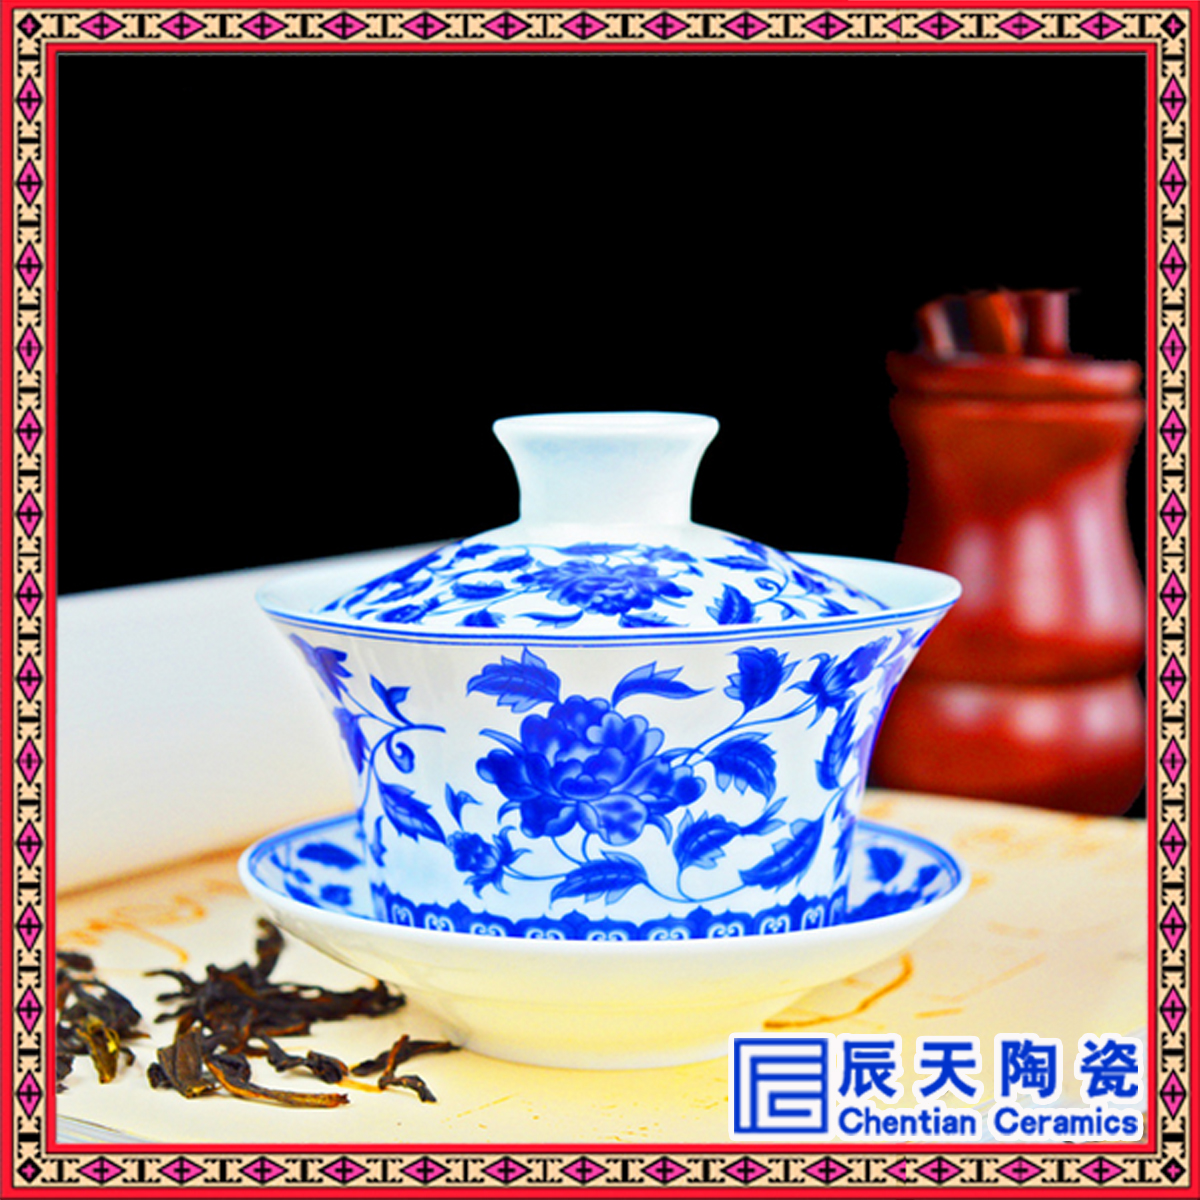 陶瓷盖碗厂家手绘礼品陶瓷盖碗结婚敬茶陶瓷盖碗